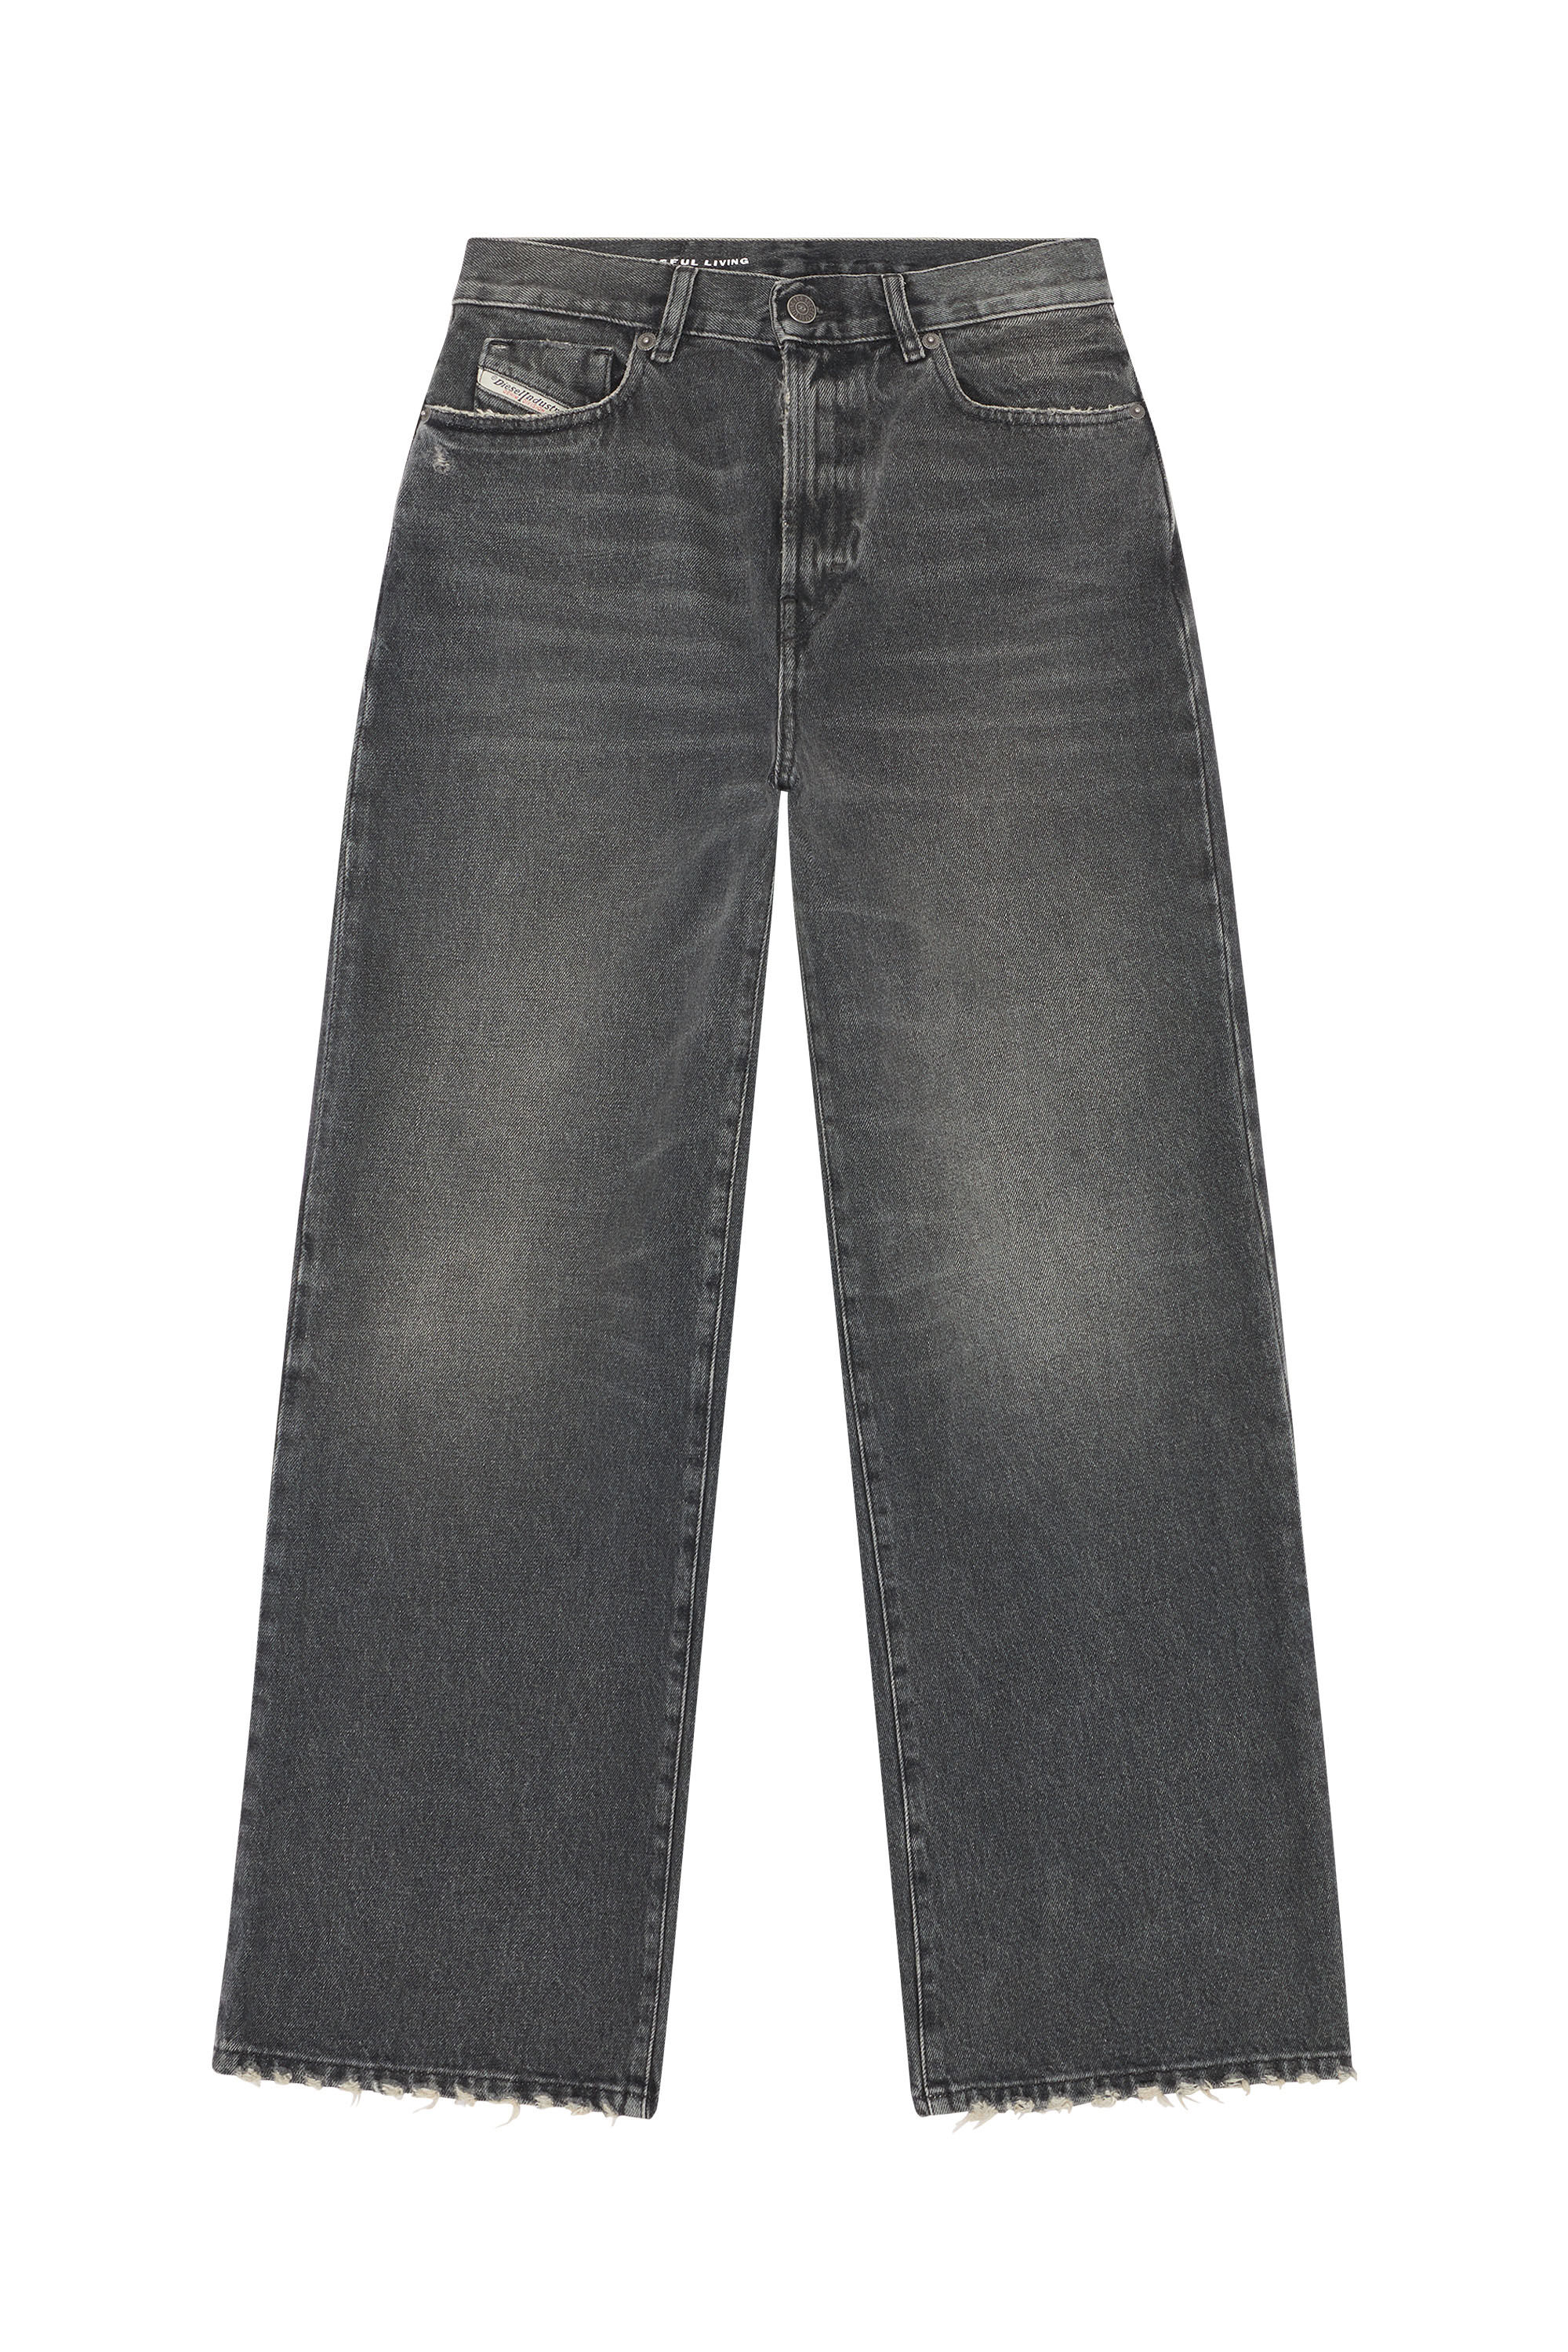 Diesel - Bootcut and Flare Jeans 2000 Widee 007K8, Black/Dark grey - Image 2